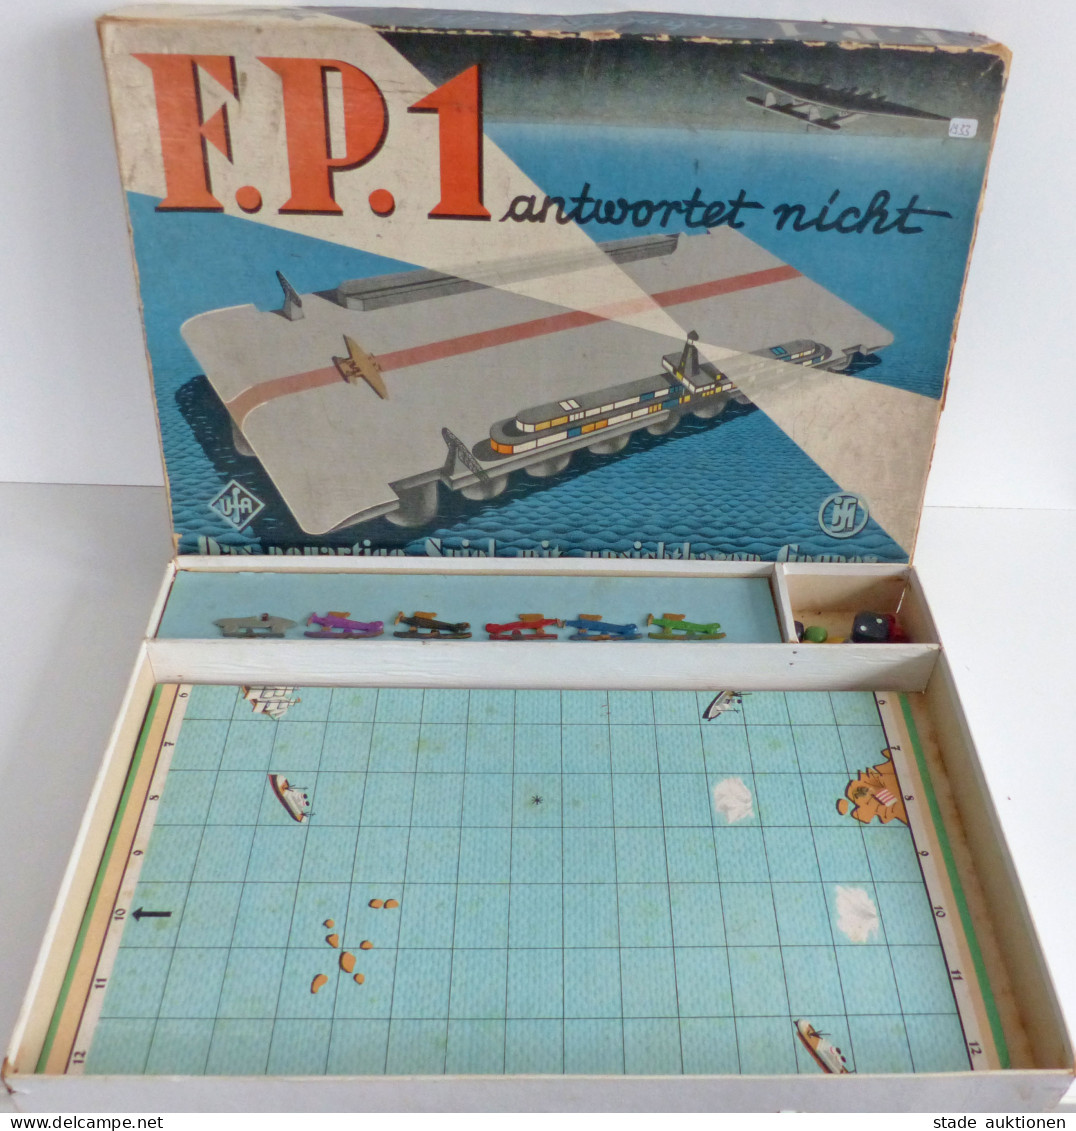 Spielzeug F.P.1 Antwortet Nicht Das Neuartige Spiel Mit Unsichtbaren Gegnern Von 1933, Originalverpackung 1 Flugzeug Feh - Jeux Et Jouets